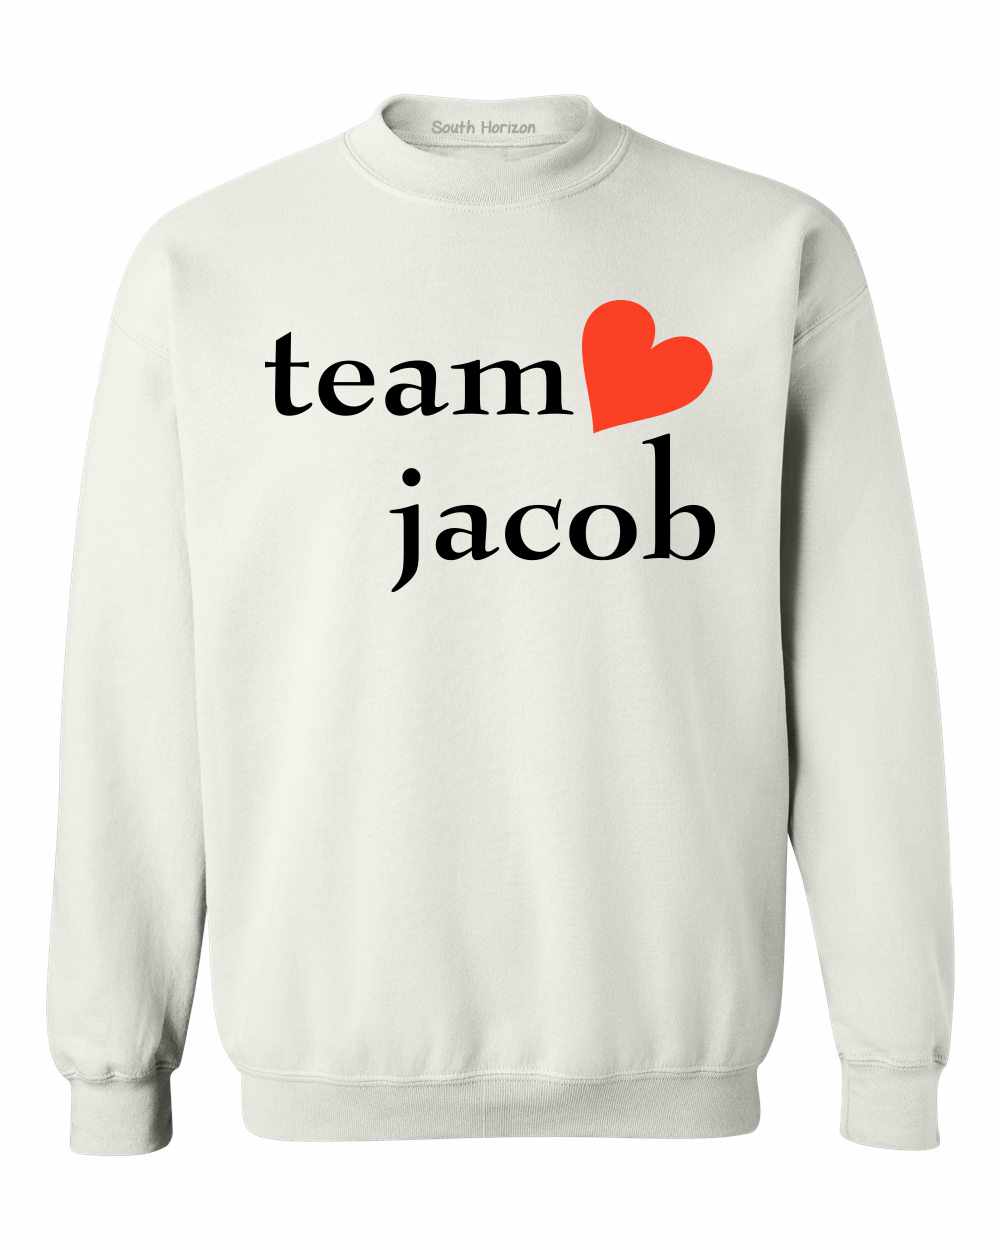 TEAM JACOB on SweatShirt